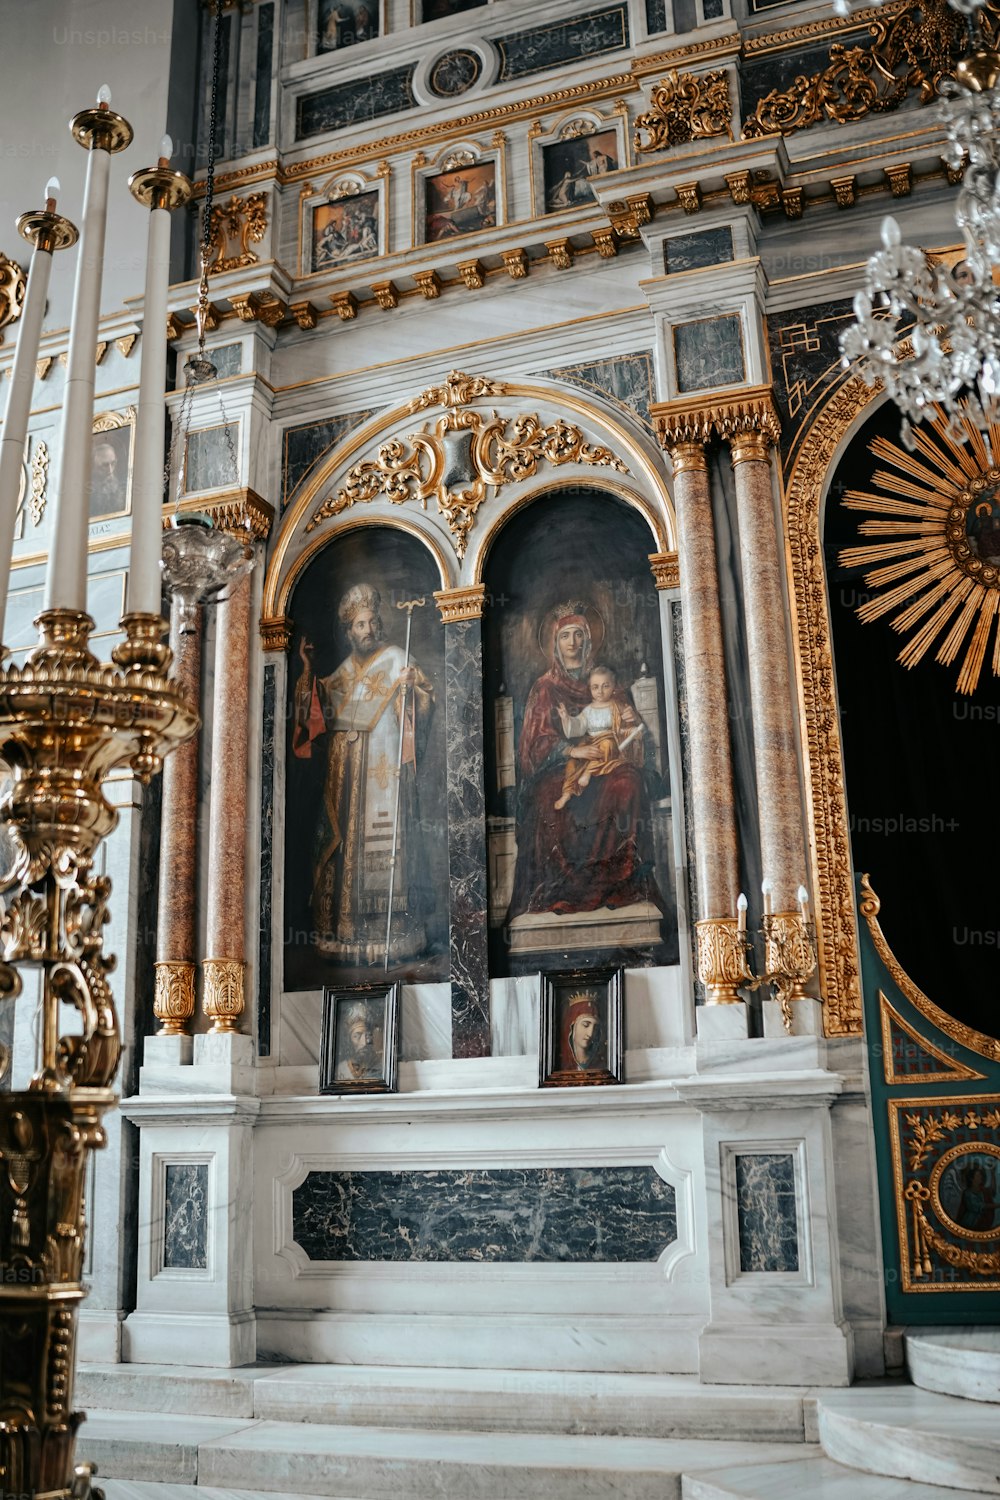 壁に絵が描かれた教会の祭壇